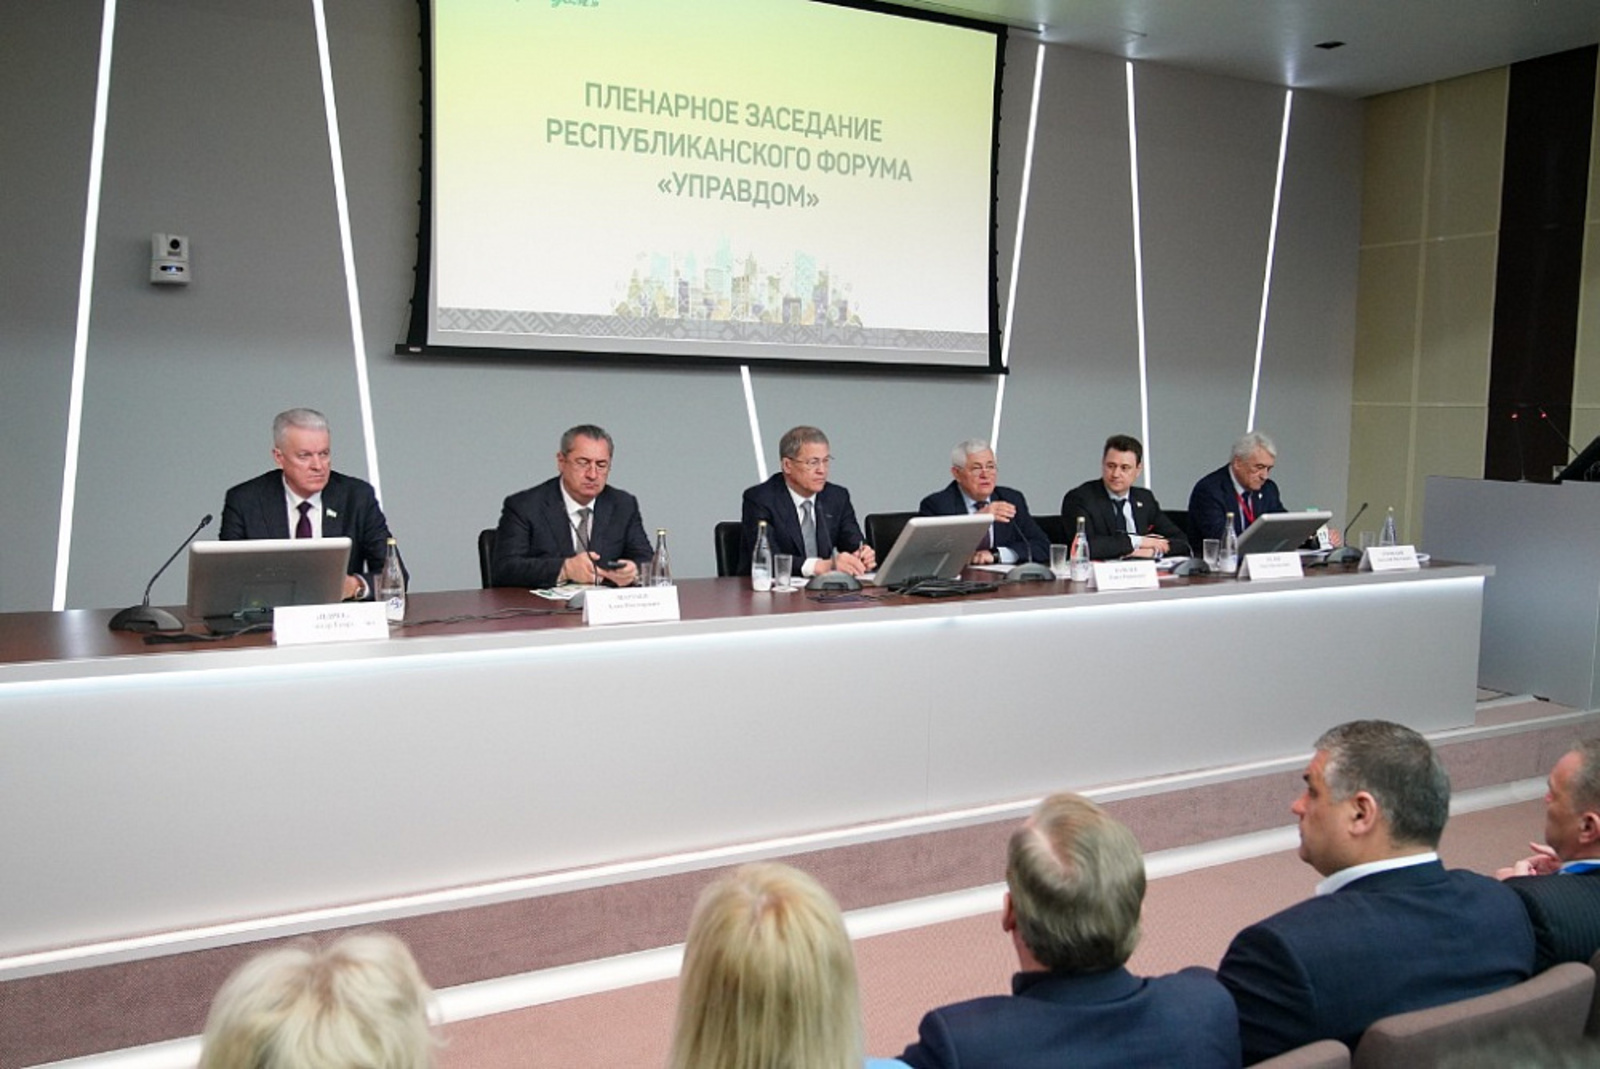 Радий Хабиров на пленарном заседании форума «Управдом» обозначил ключевые задачи развития ЖКХ региона